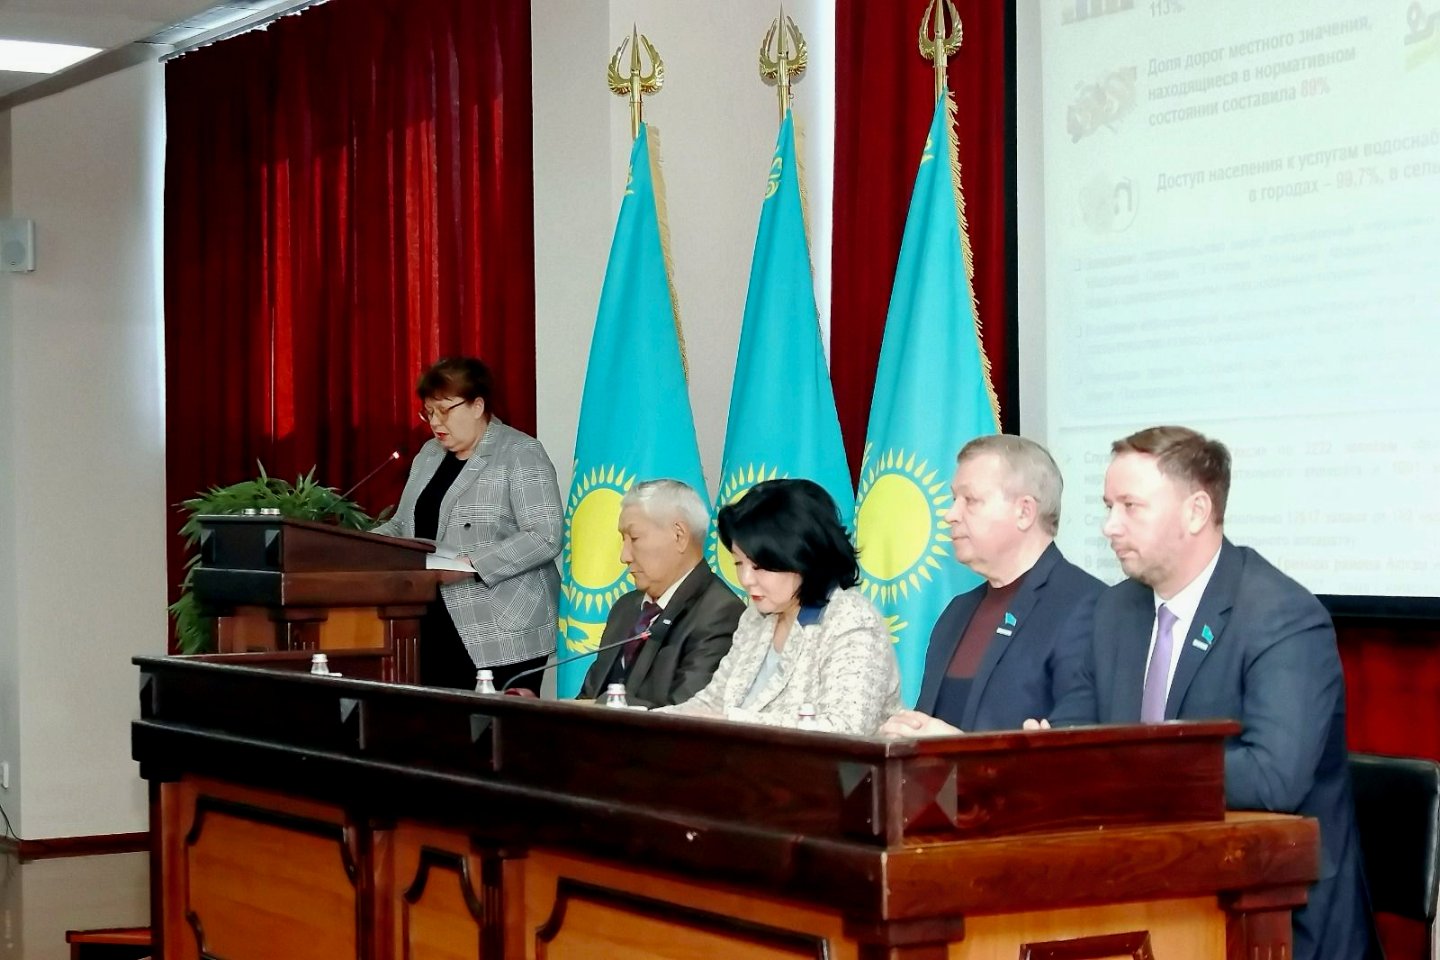 Происшествия в Казахстане и мире / Криминальные новости / МВД Казахстана пока не подтверждает информацию о захвате заложников в Актобе